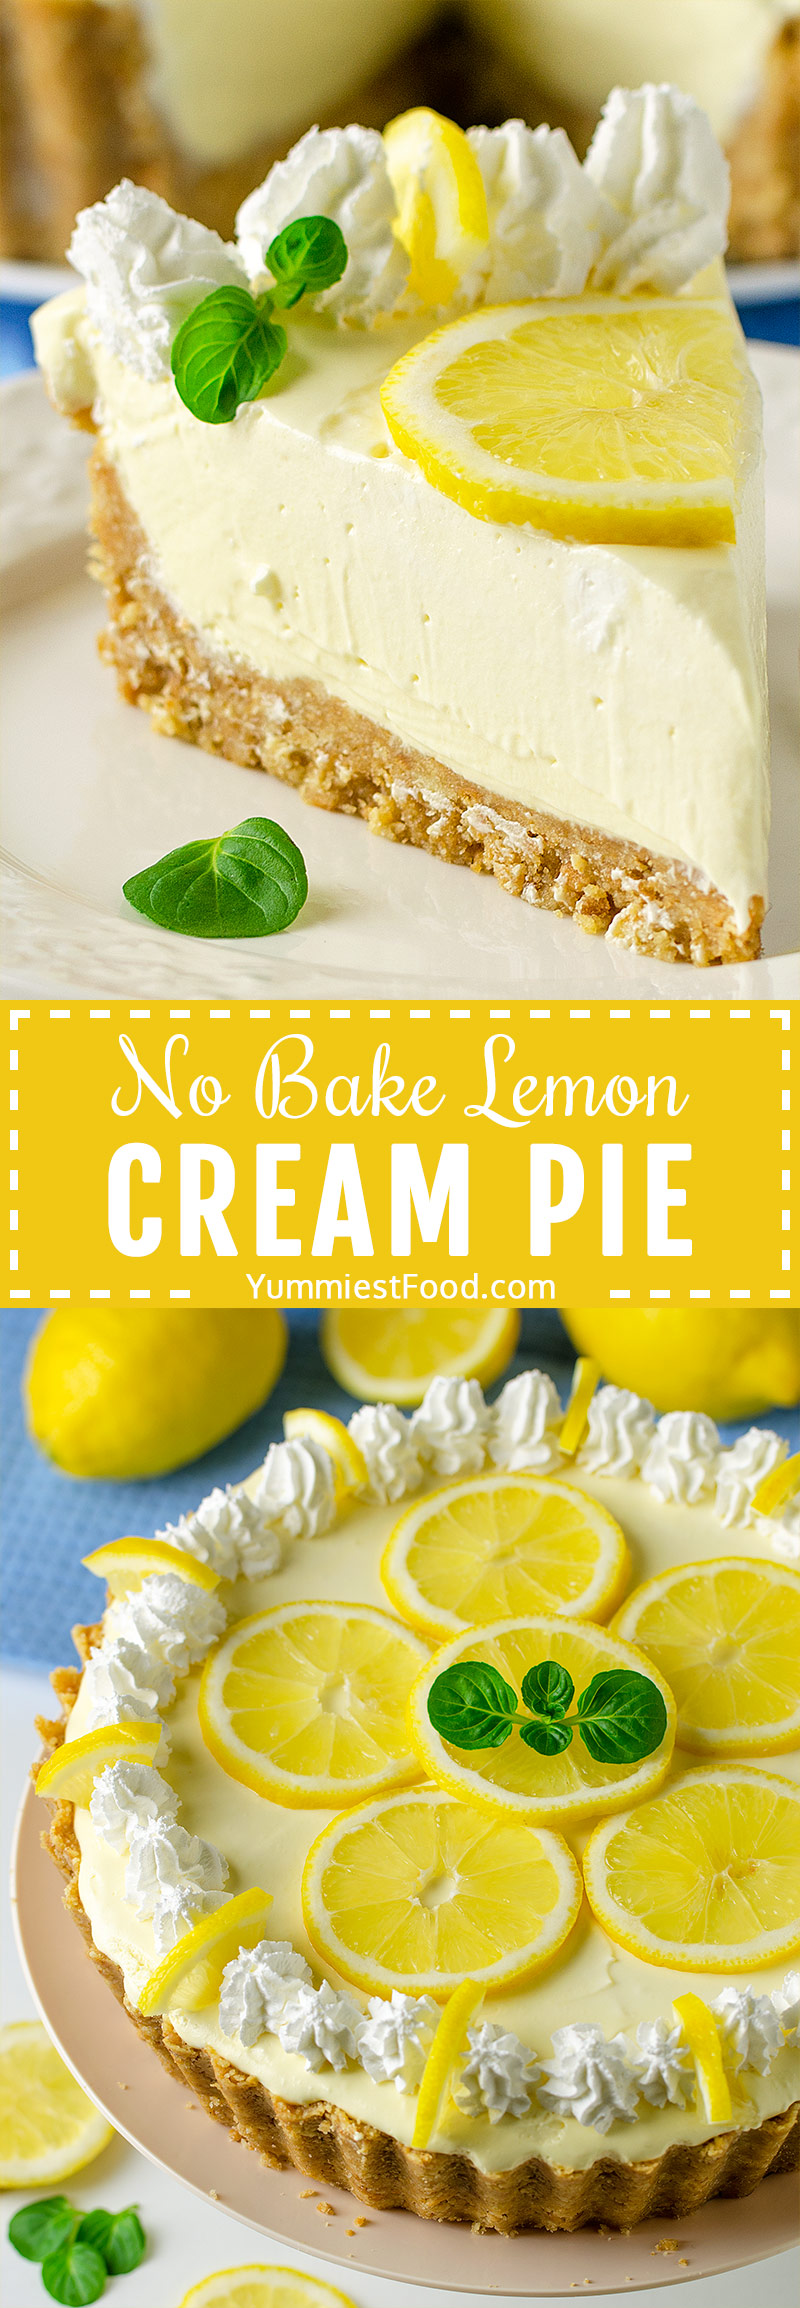 NO BAKE LEMON CREAM PIE – Sweet, tart and easy pie, full of lemon flavor